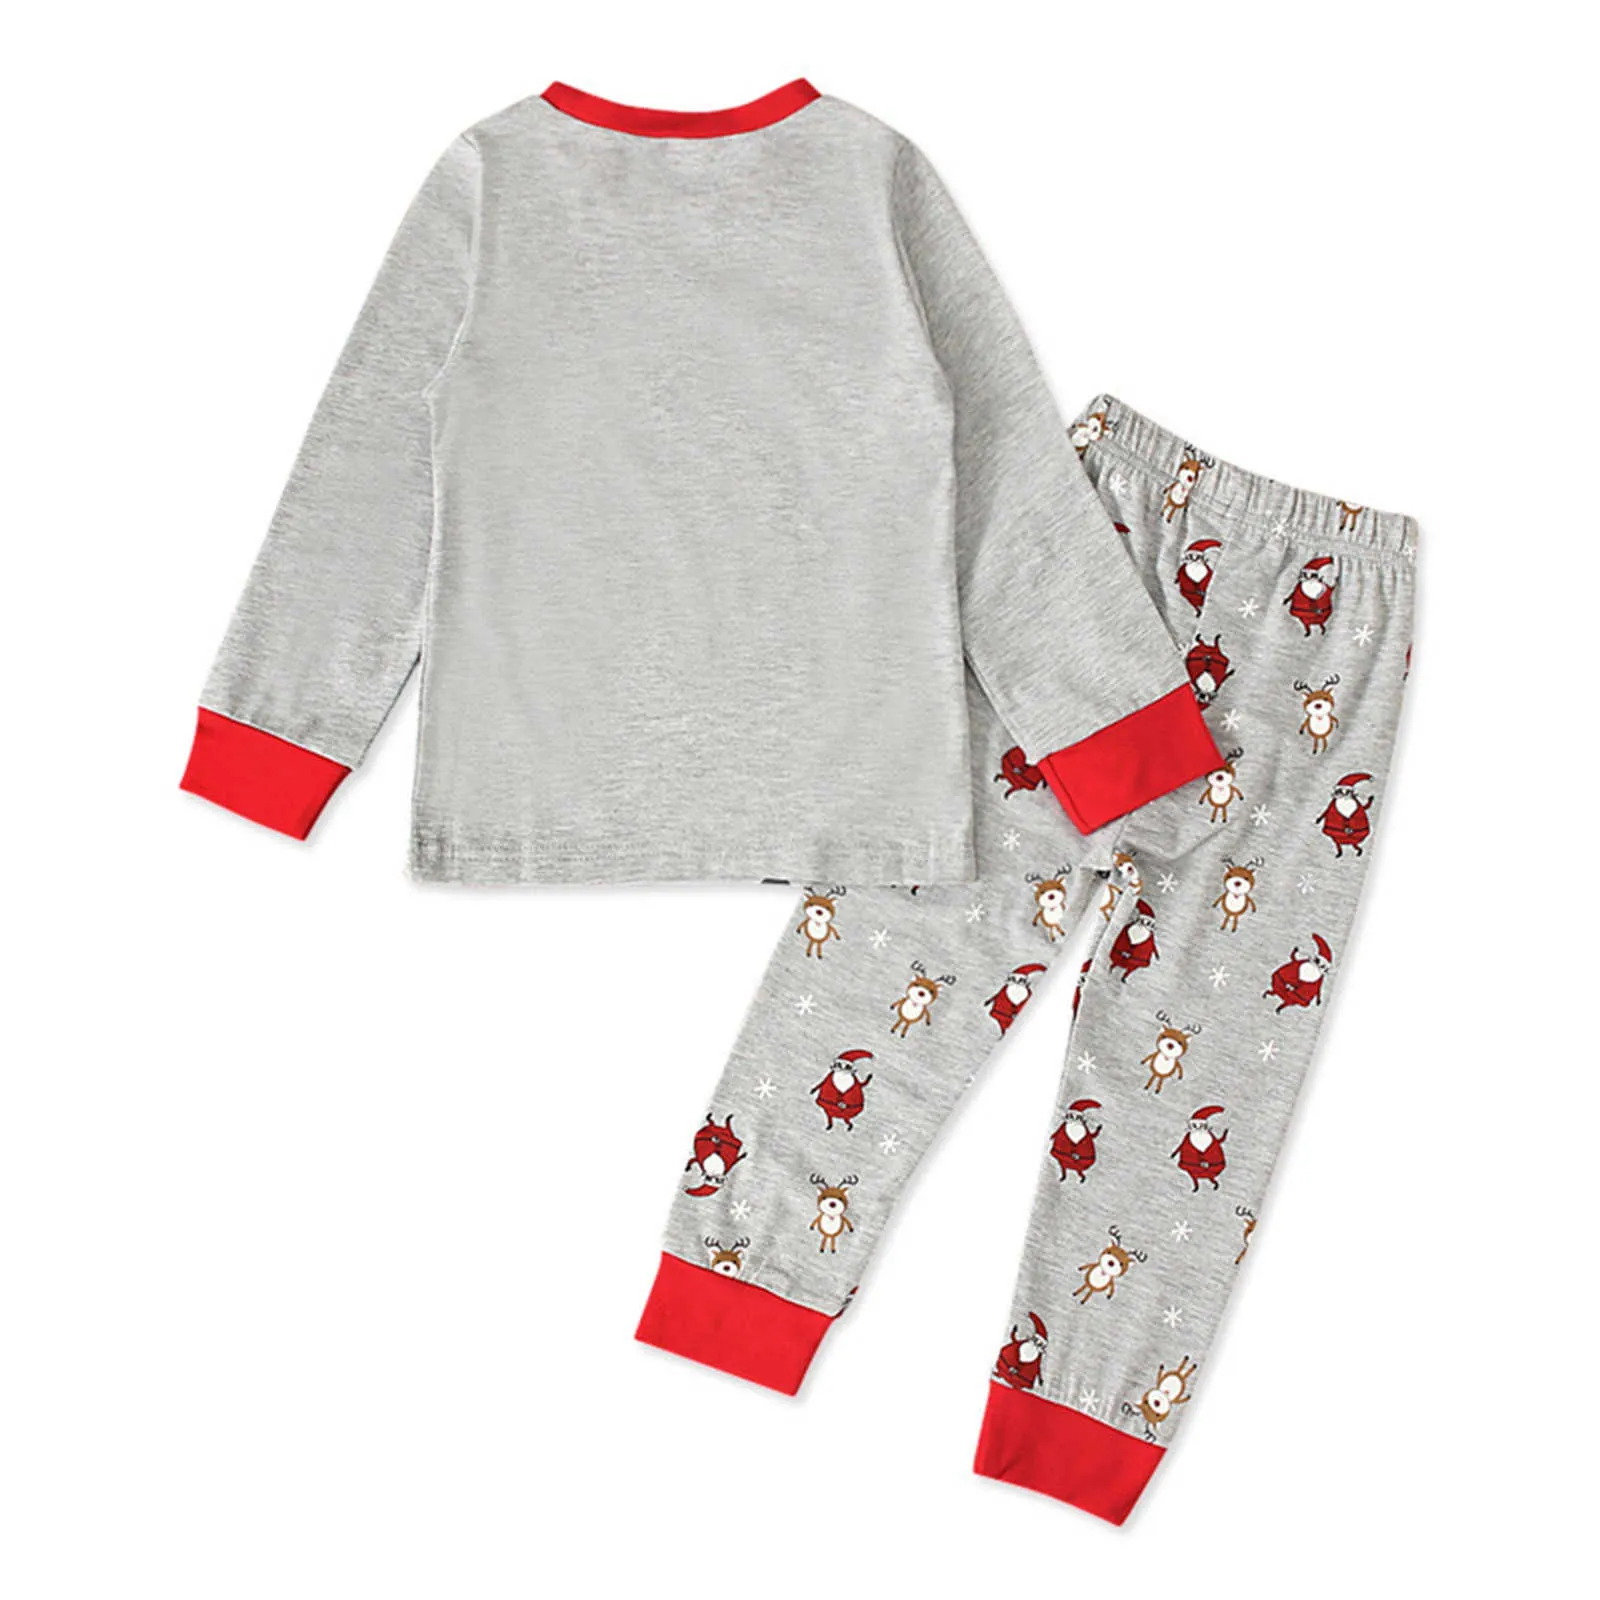 Nouveaux Enfants De Noël Pyjamas Enfants Père Noël Vêtements De Nuit Bébé Animal Pyjamas Garçons Filles Vêtements De Nuit Chilld Pijamas Ensembles 2021 Vente G1023